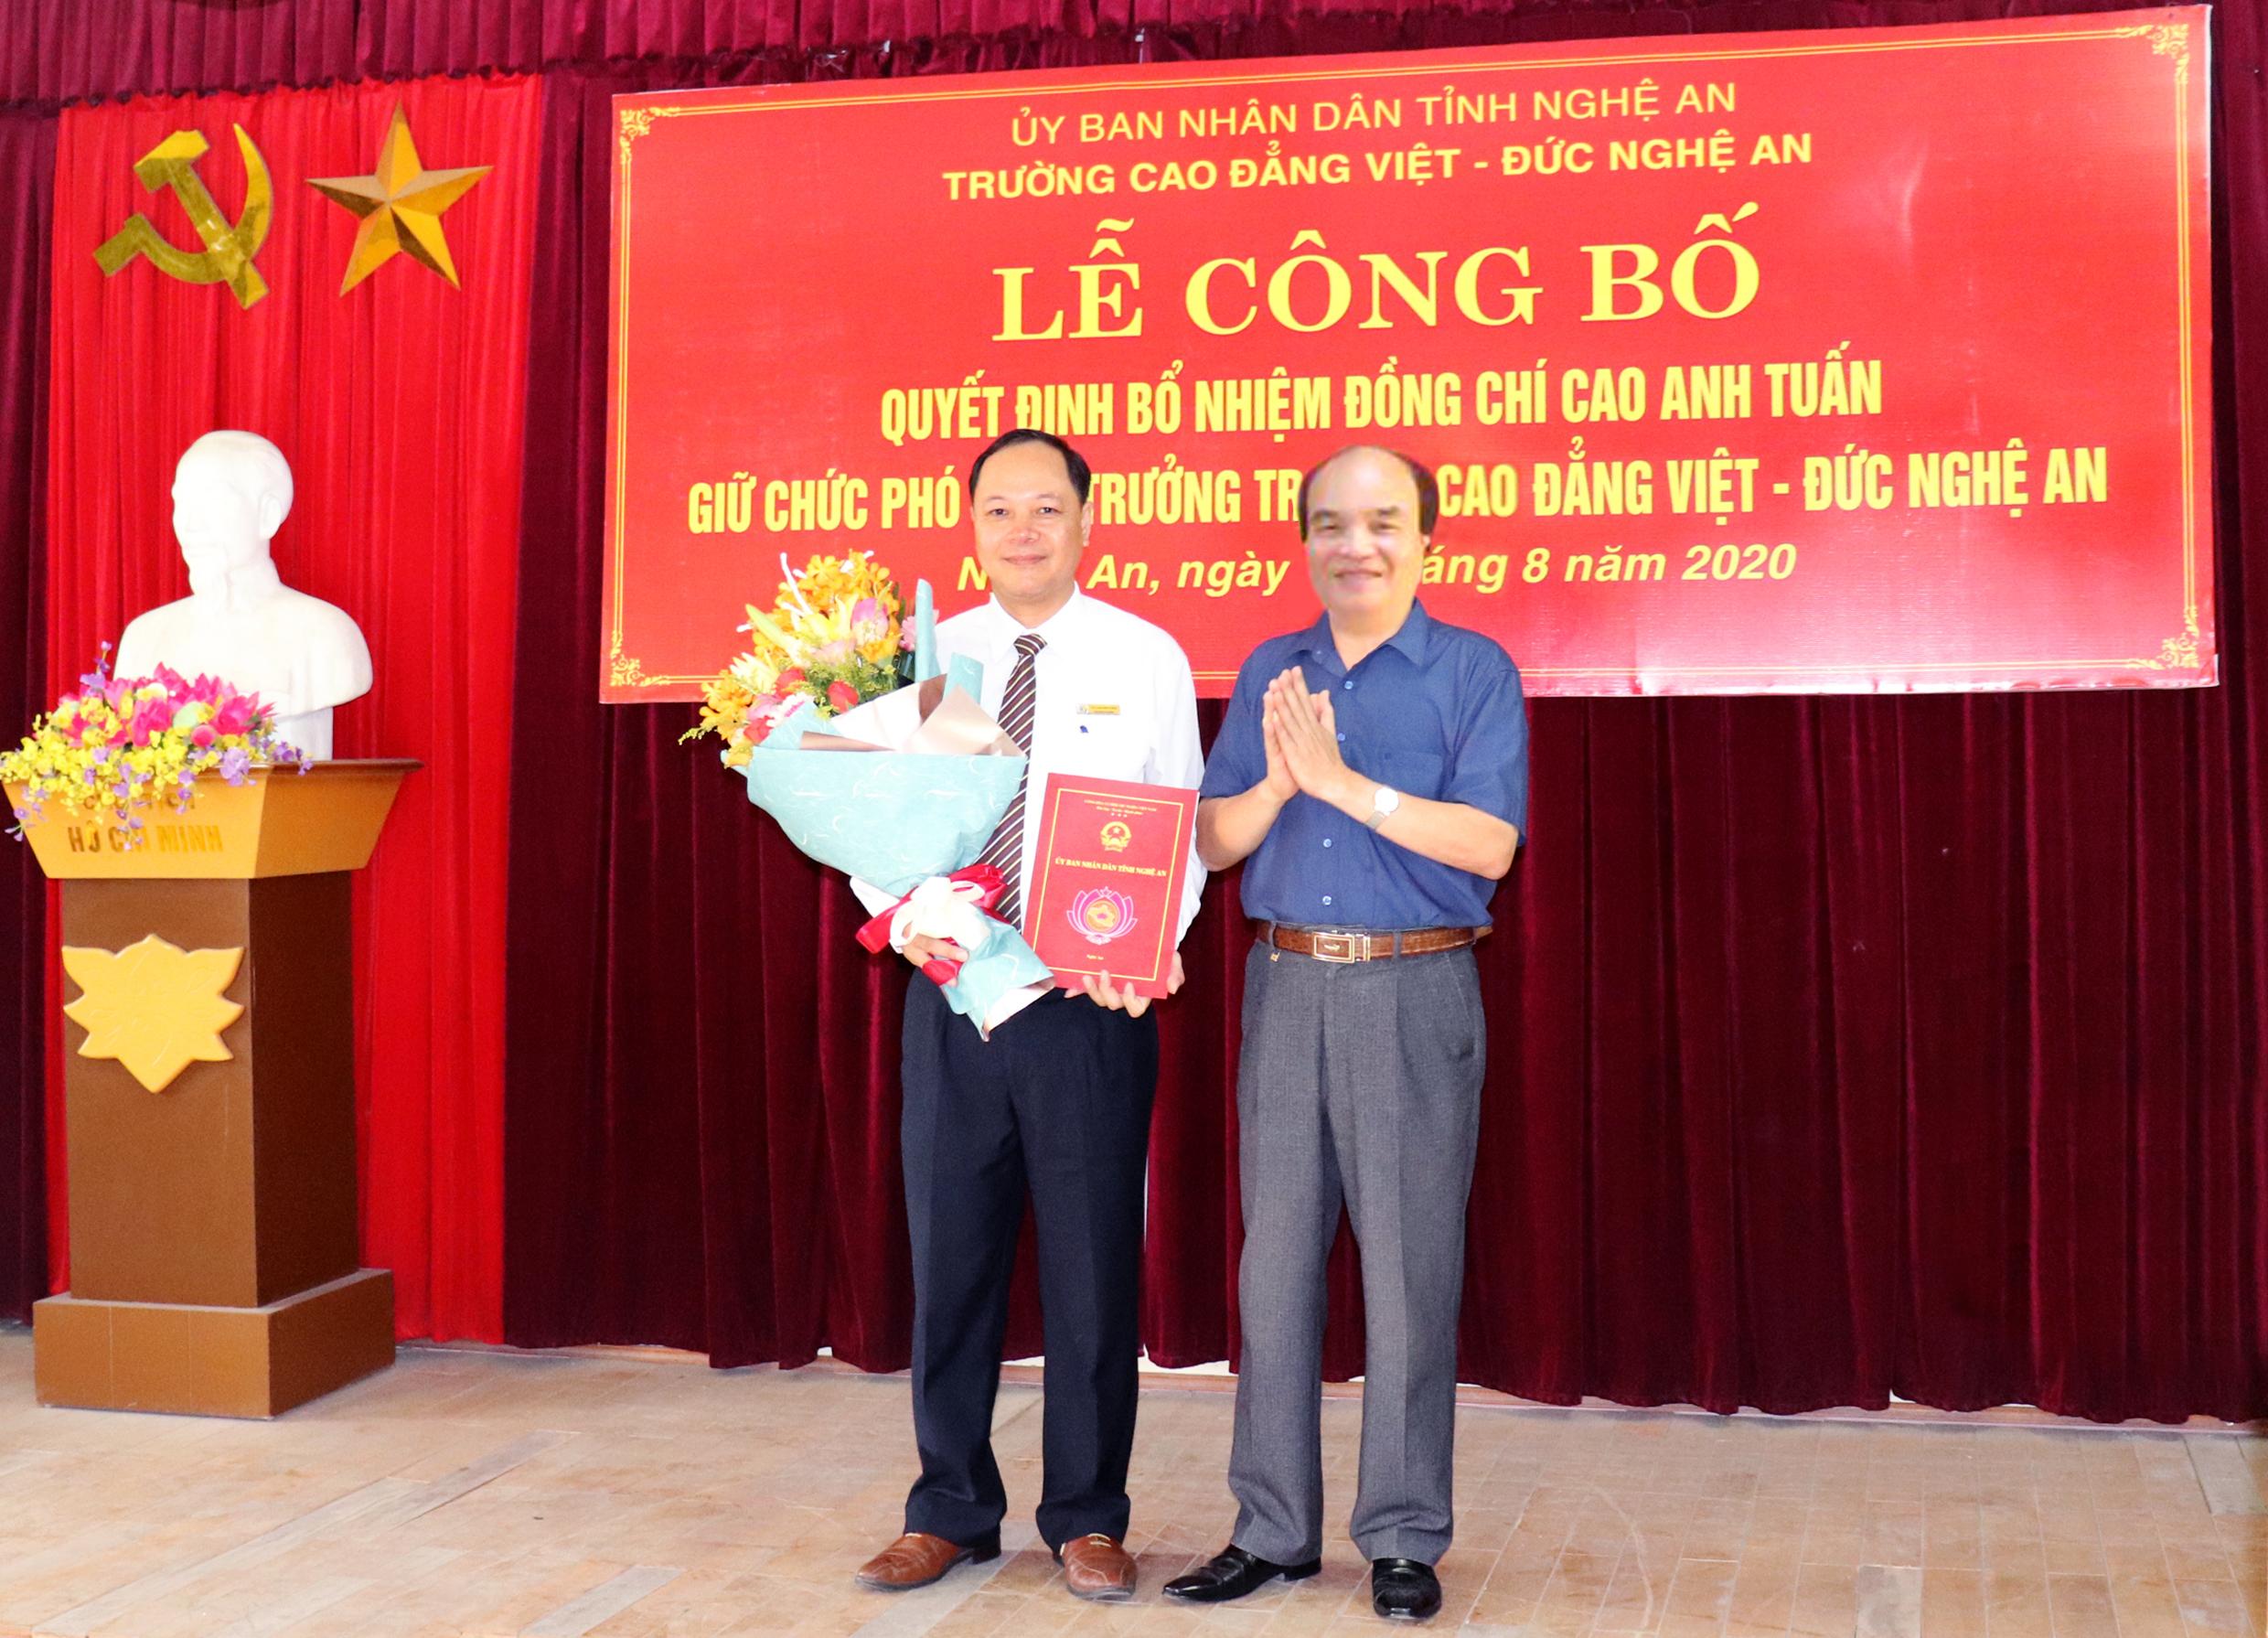 Lễ công bố Quyết định bổ nhiệm Phó Hiệu trưởng Trường Cao đẳng Việt - Đức Nghệ An